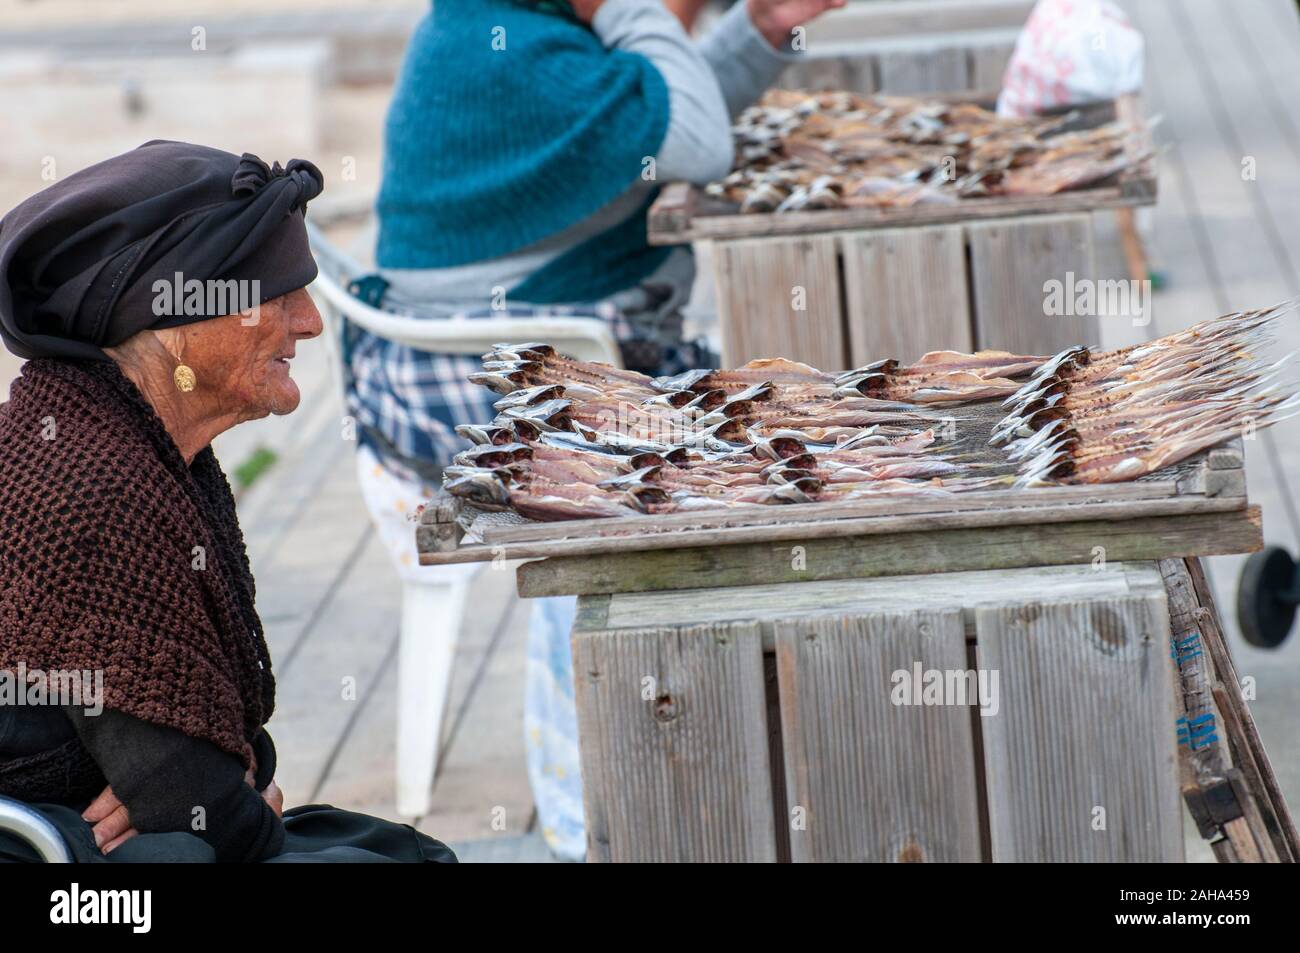 Poissonnier vend du poisson séché au soleil sur la plage de Nazaré, Portugal Banque D'Images